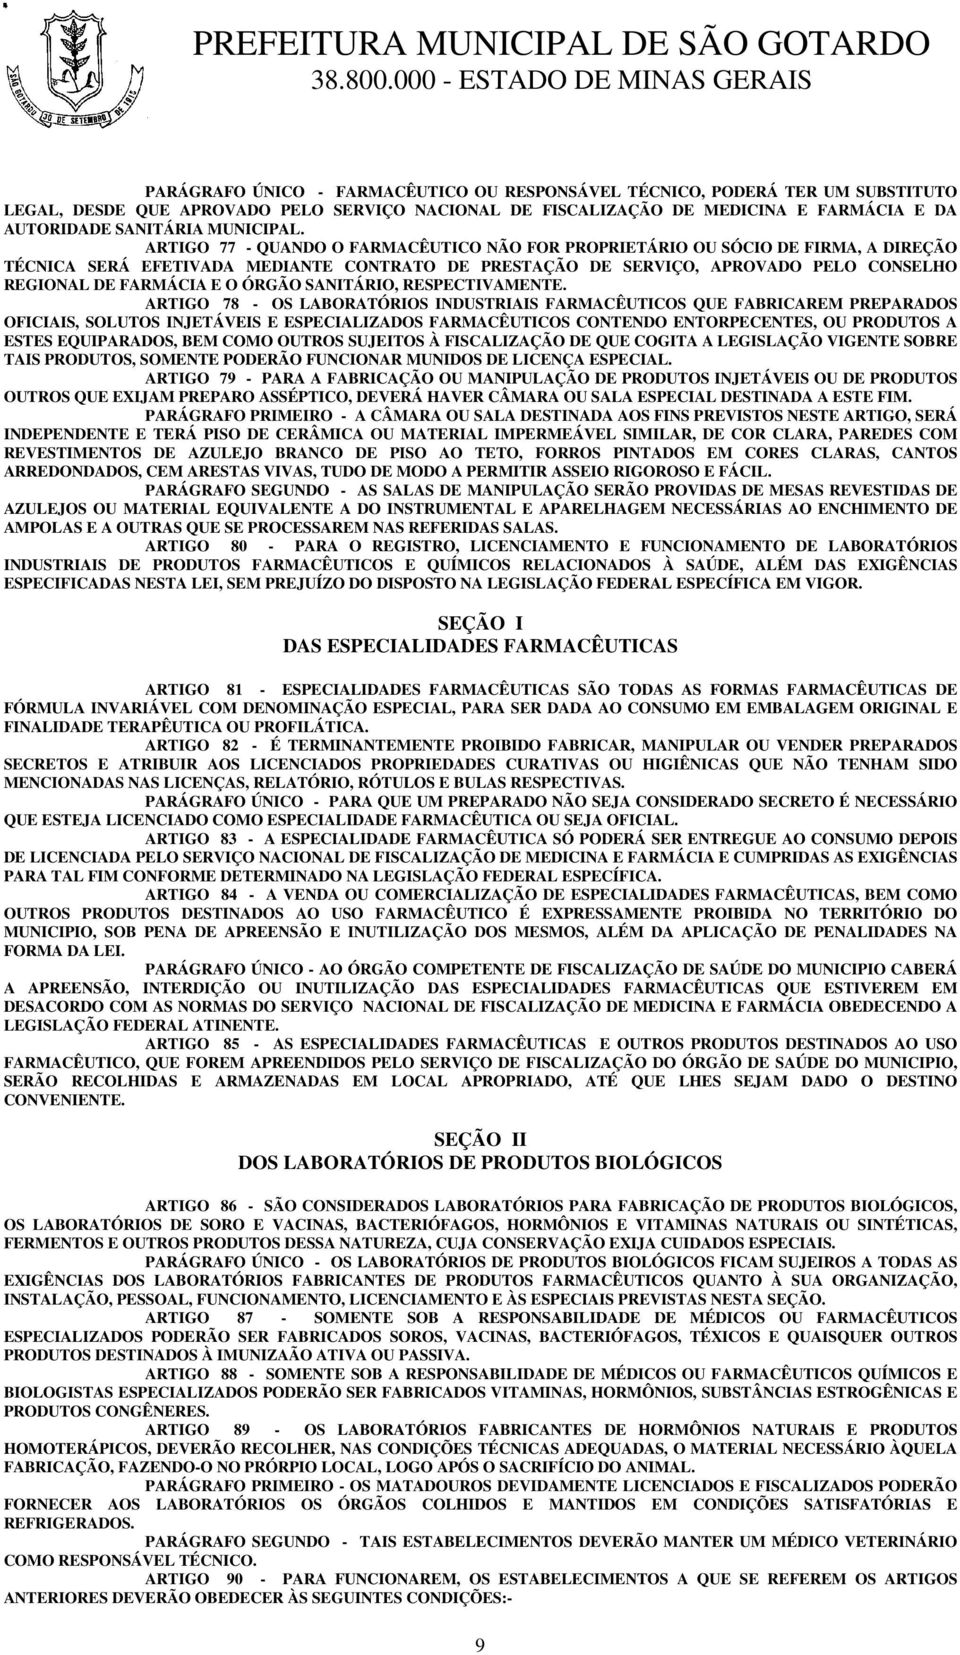 ARTIGO 77 - QUANDO O FARMACÊUTICO NÃO FOR PROPRIETÁRIO OU SÓCIO DE FIRMA, A DIREÇÃO TÉCNICA SERÁ EFETIVADA MEDIANTE CONTRATO DE PRESTAÇÃO DE SERVIÇO, APROVADO PELO CONSELHO REGIONAL DE FARMÁCIA E O